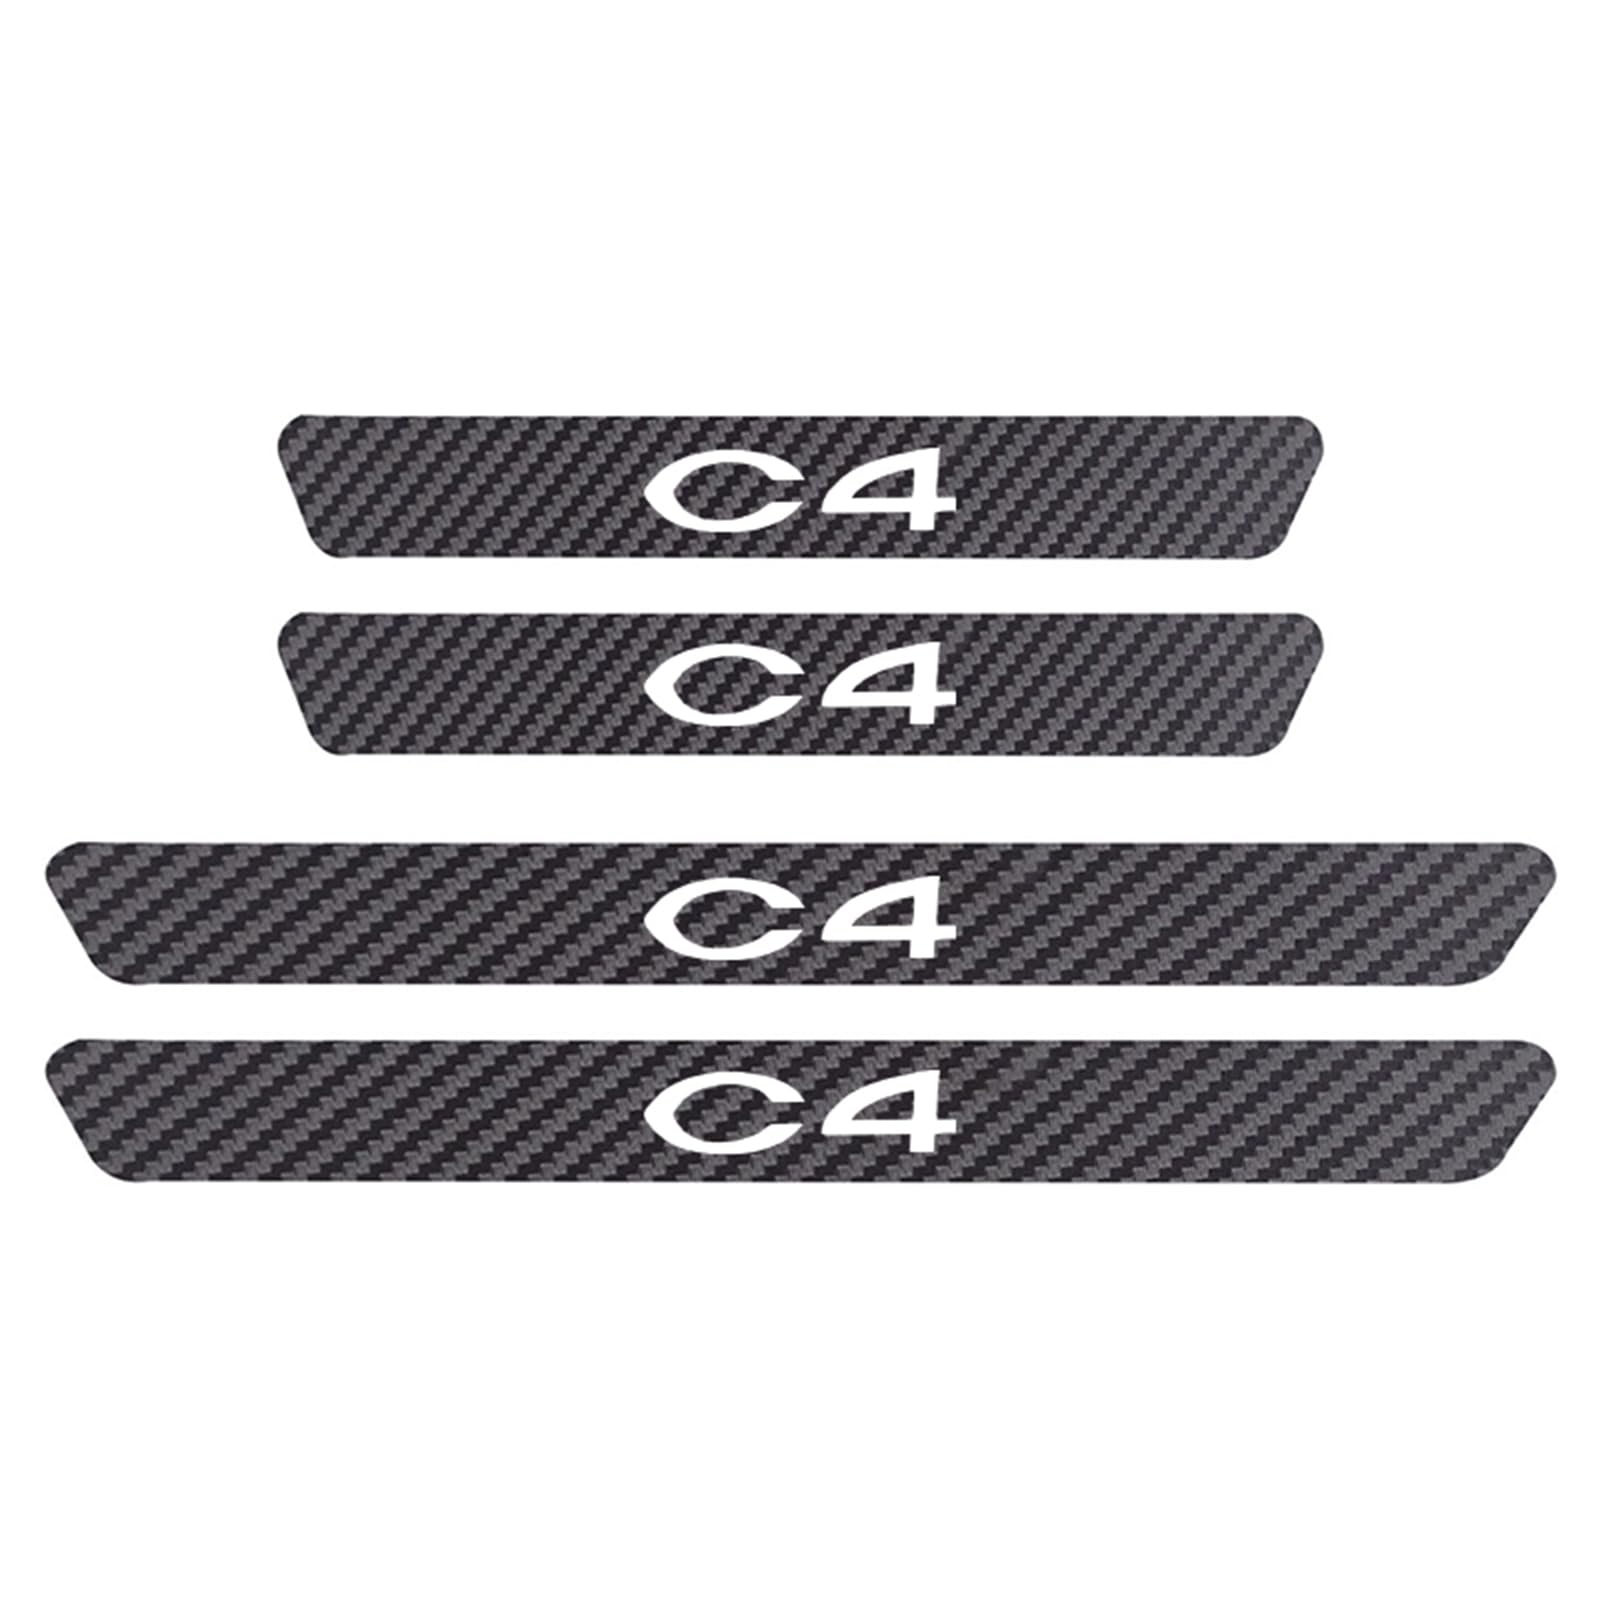 4 StüCk Auto Selbstklebend Kohlefaser Einstiegsleisten Kick Plates Aufkleber für Citr-oen Cactus C8 C6, Türschwelle Lackschutzfolie Anti Scratch Trim Sticker Zubehör, C4 von YUPACK